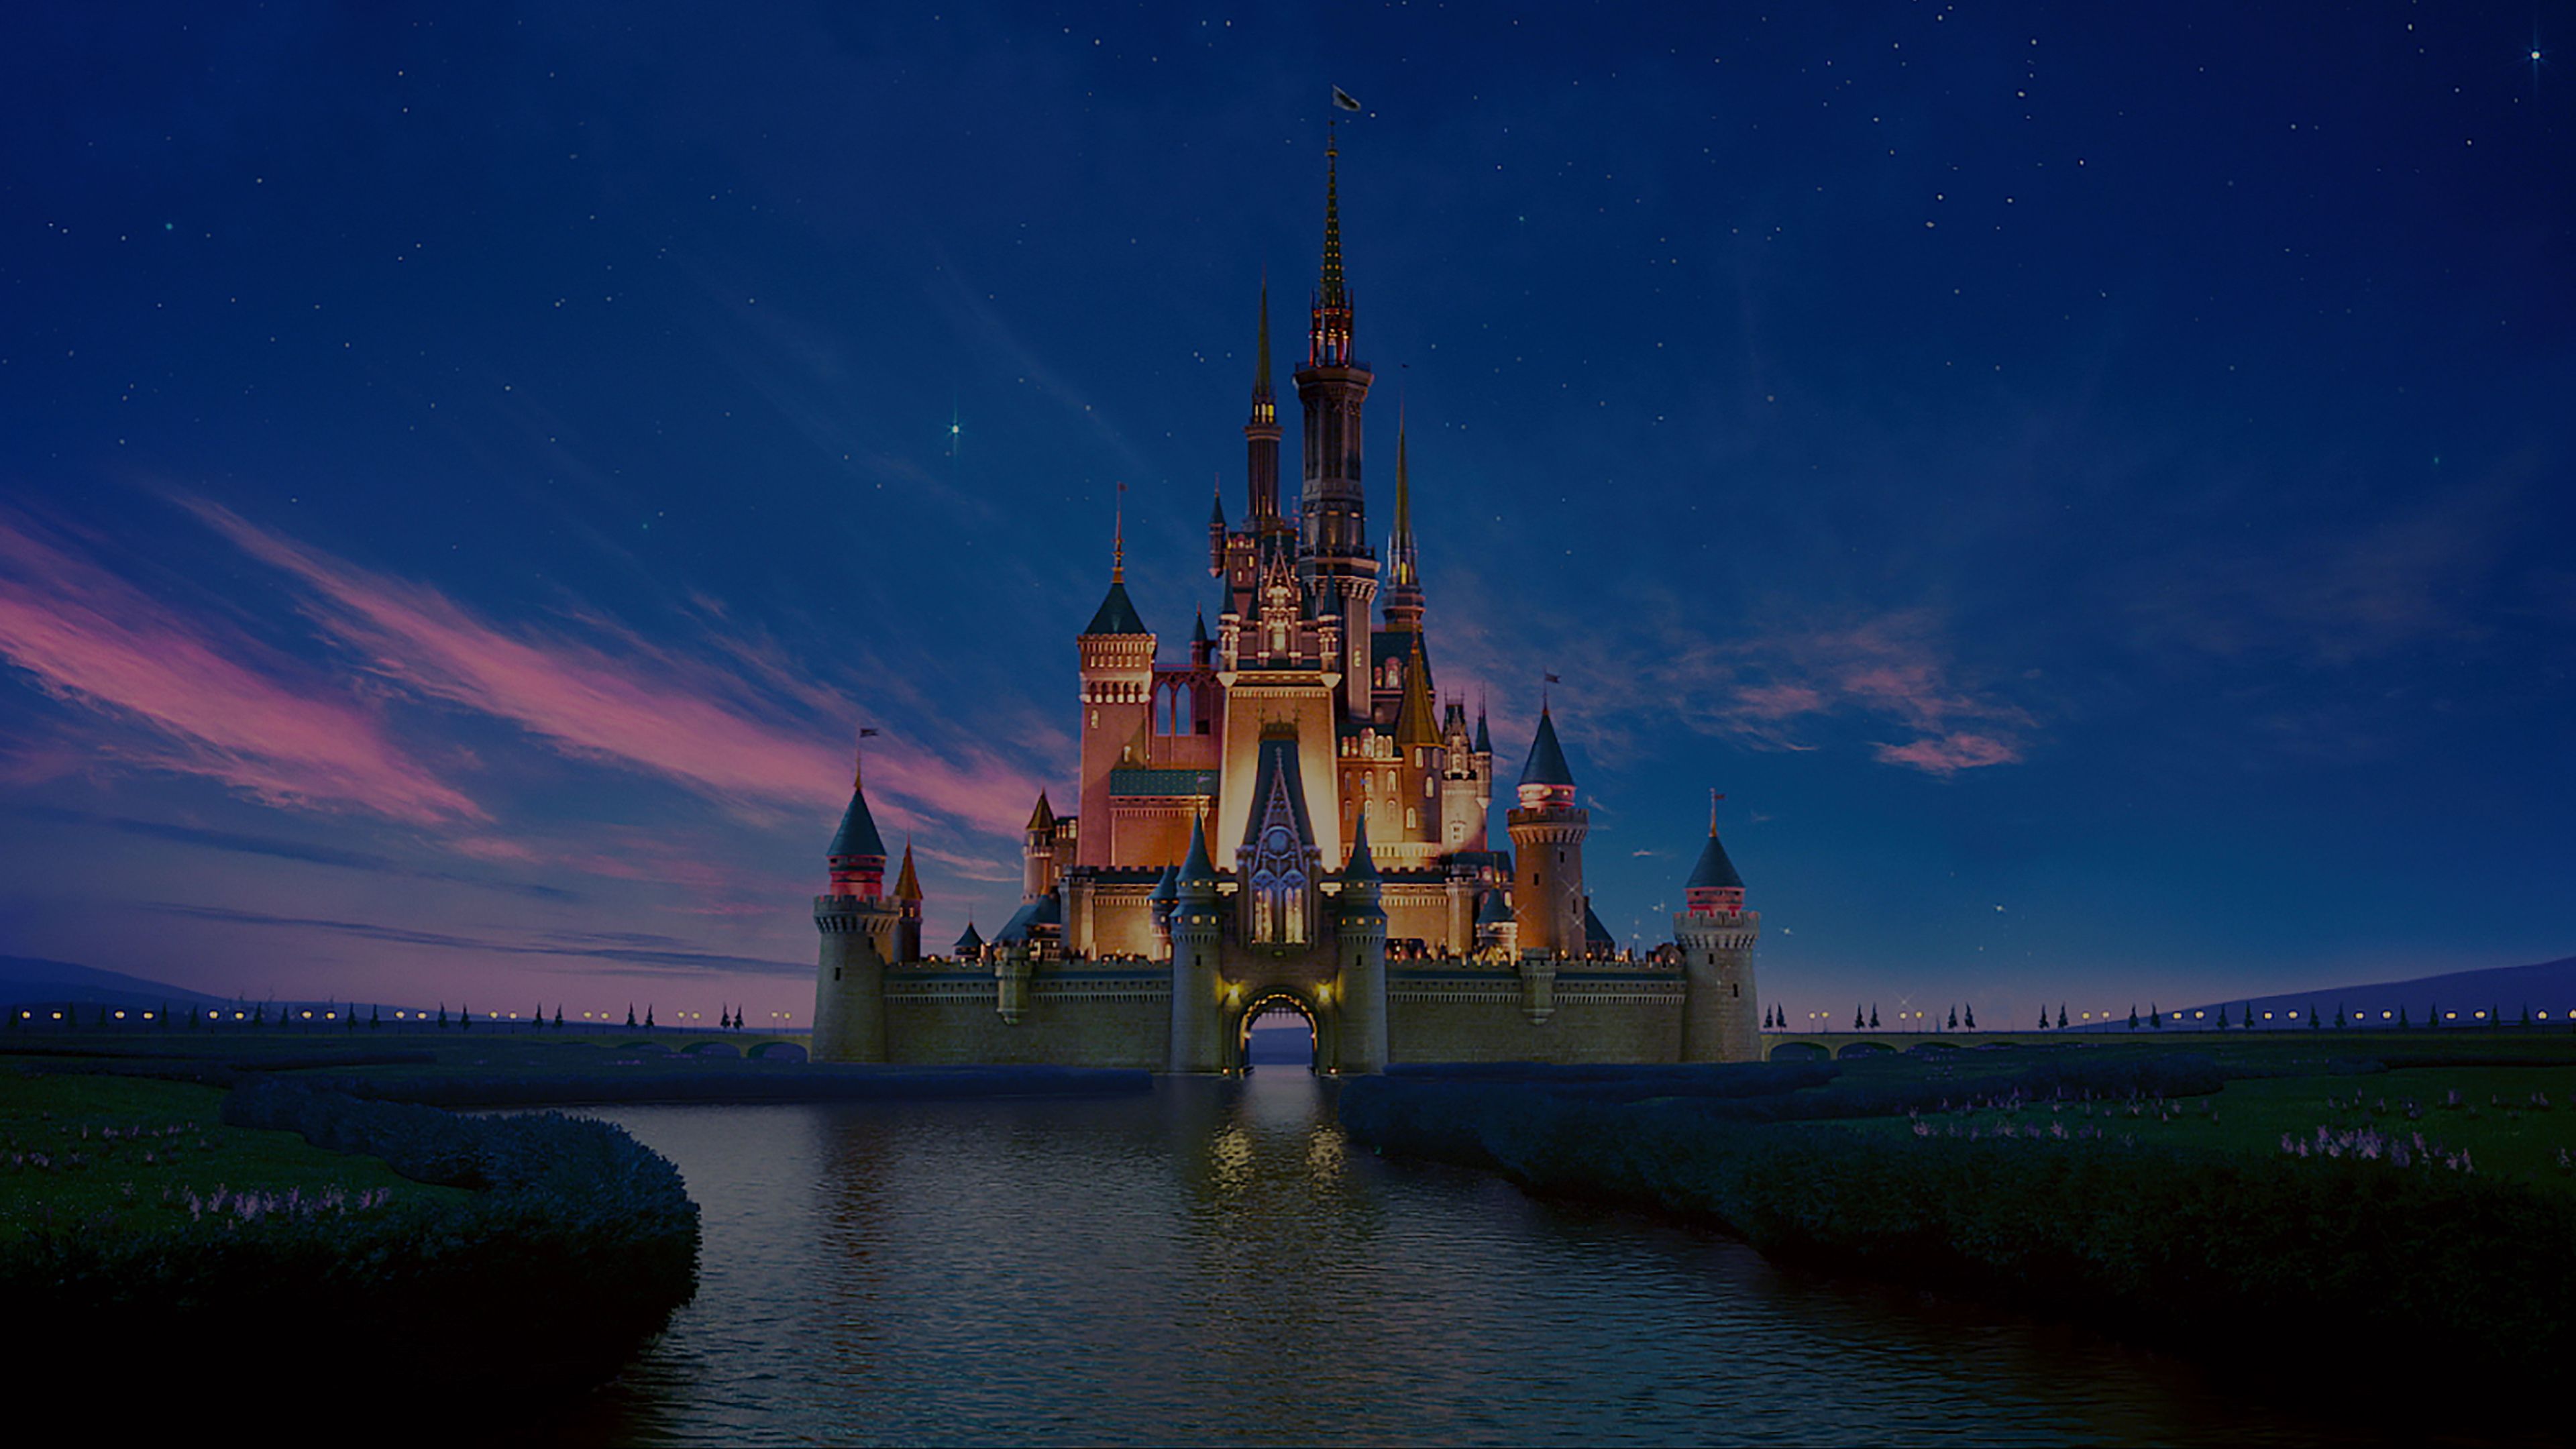 Filme und Shows von Disney Disney+